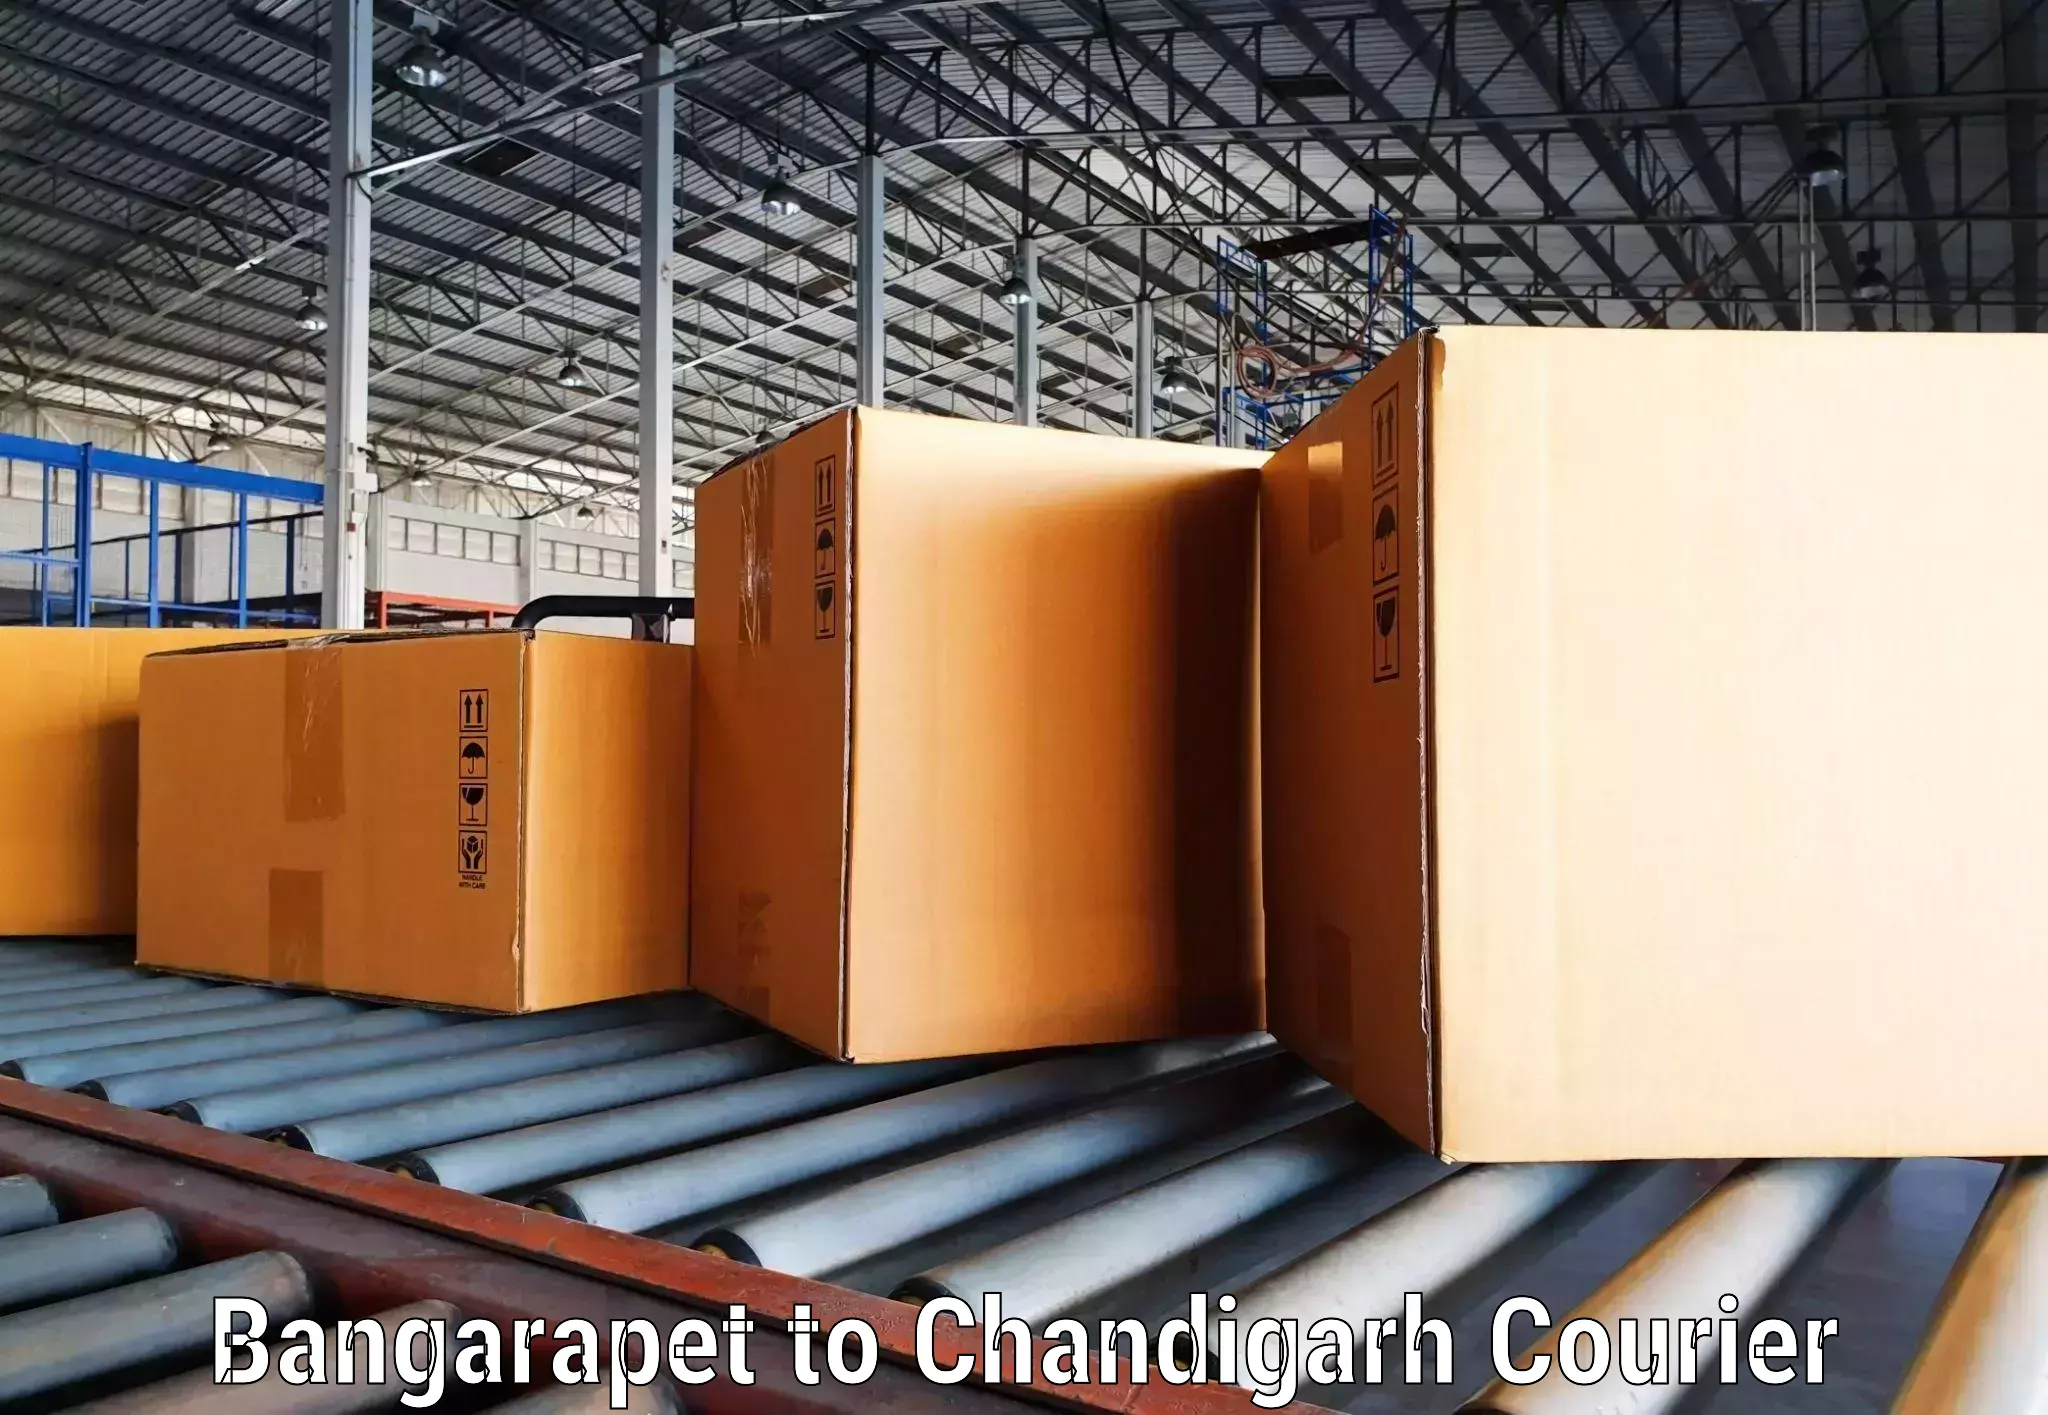 Express courier capabilities Bangarapet to Chandigarh